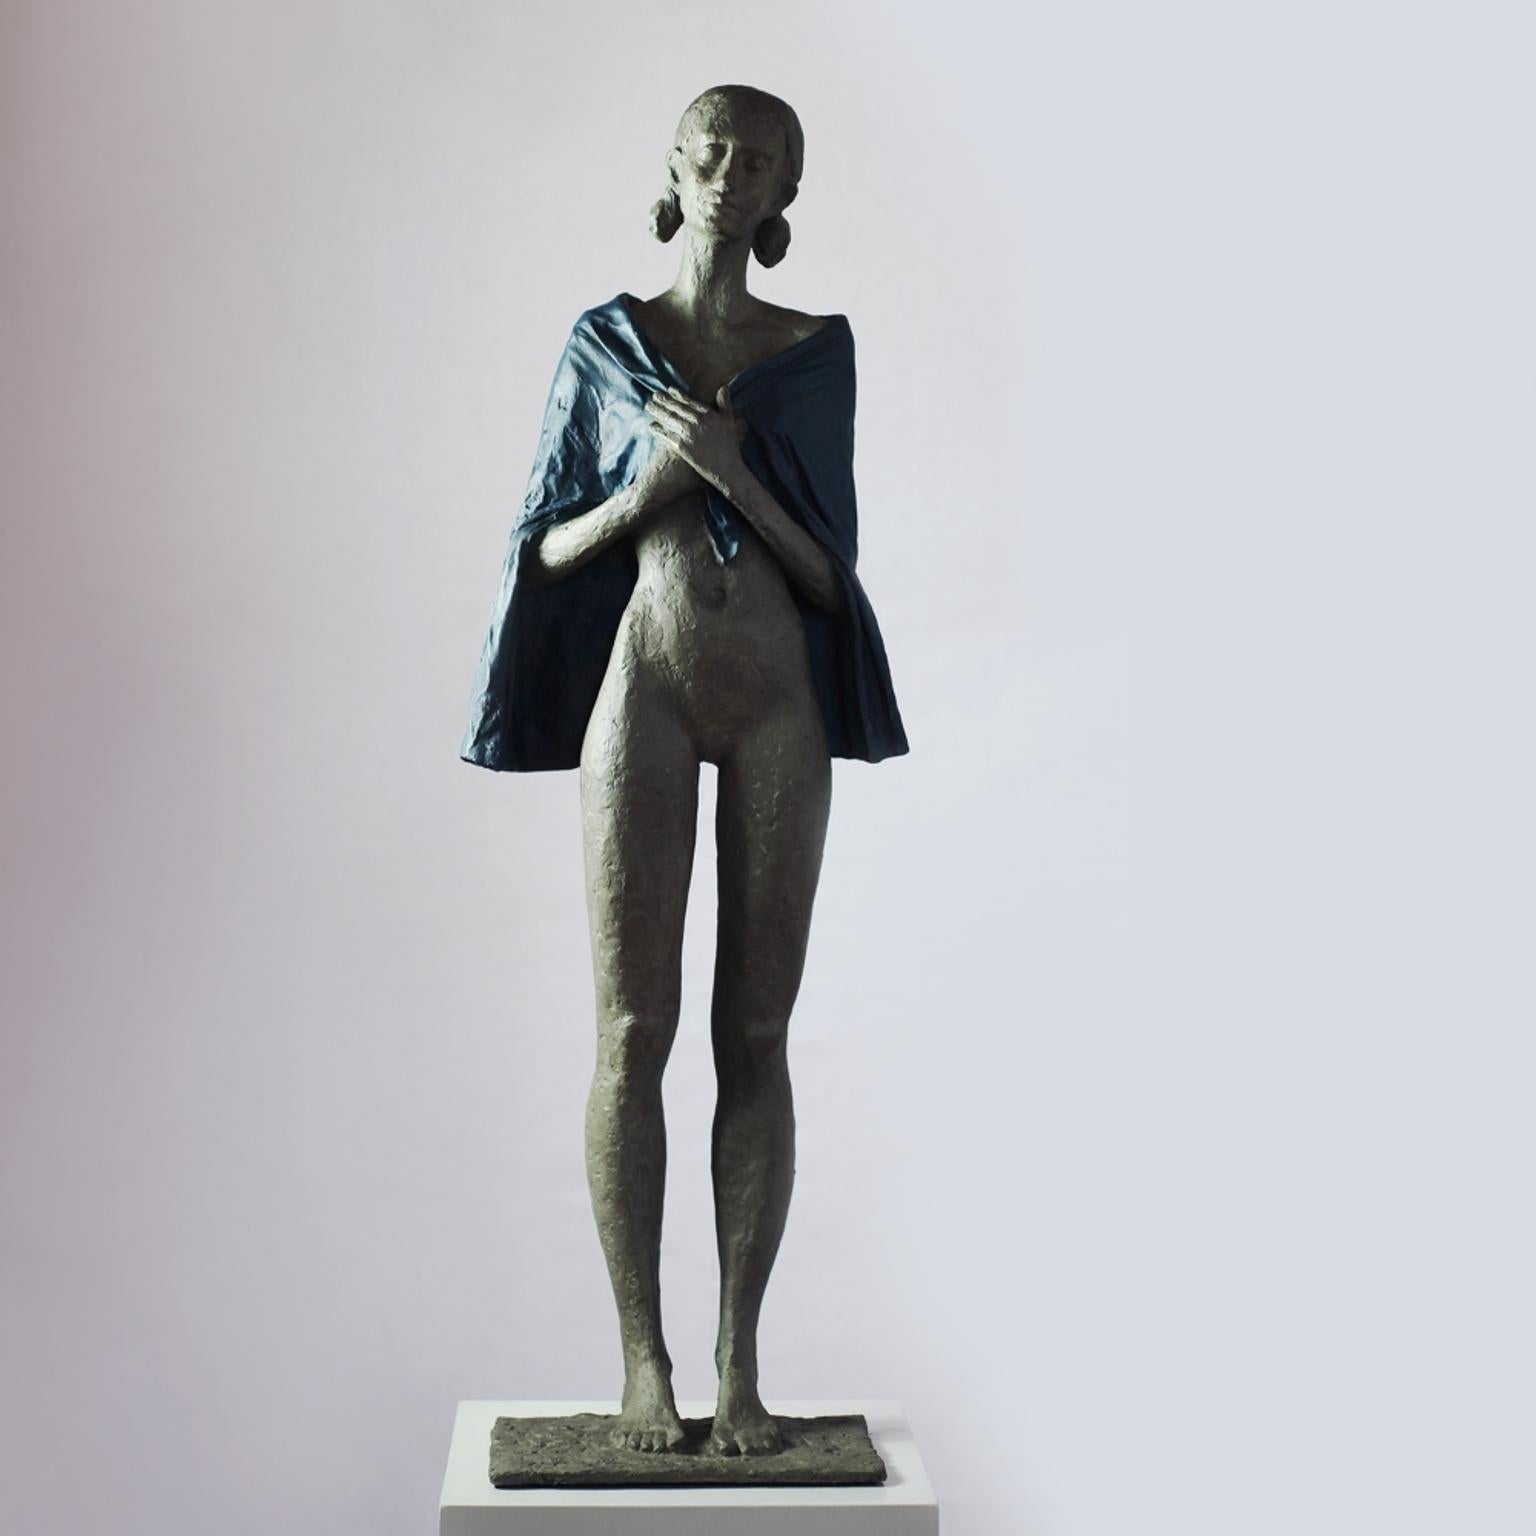 Susanne Kraisser Figurative Sculpture - Woman with Blue Cape (Day after Christmas) - contemporary bronze sculpture 